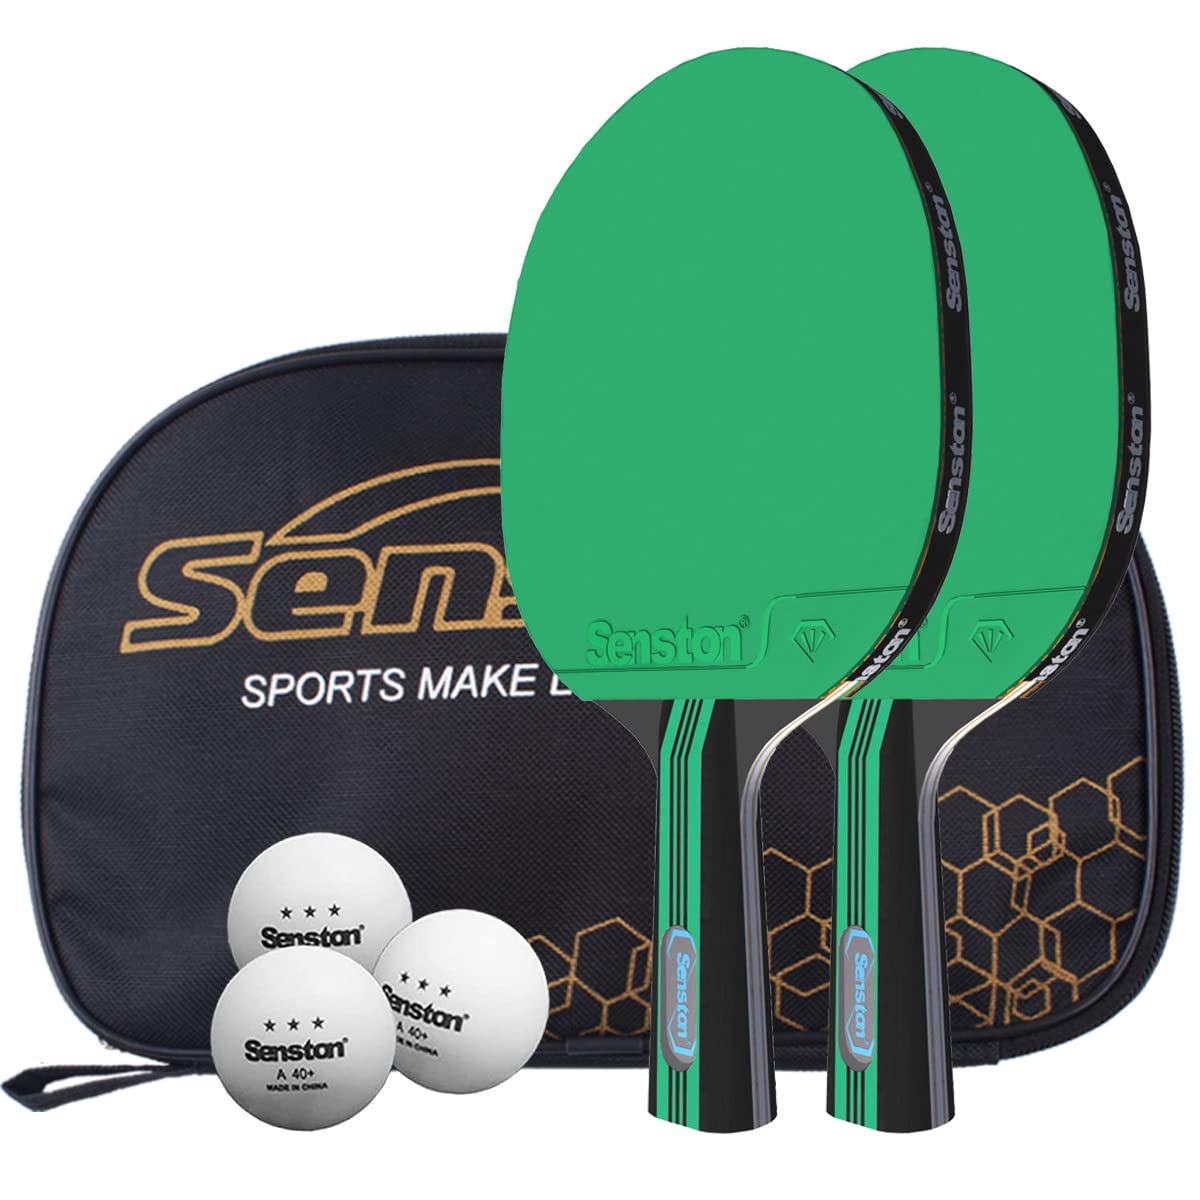 boutique en ligne Senston Raquette Ping Pong Set, 2 Raquette de Tennis de Table + 3 Balles +1 Sac, pour Intérieur Extérieur M4jonsxCx Vente chaude